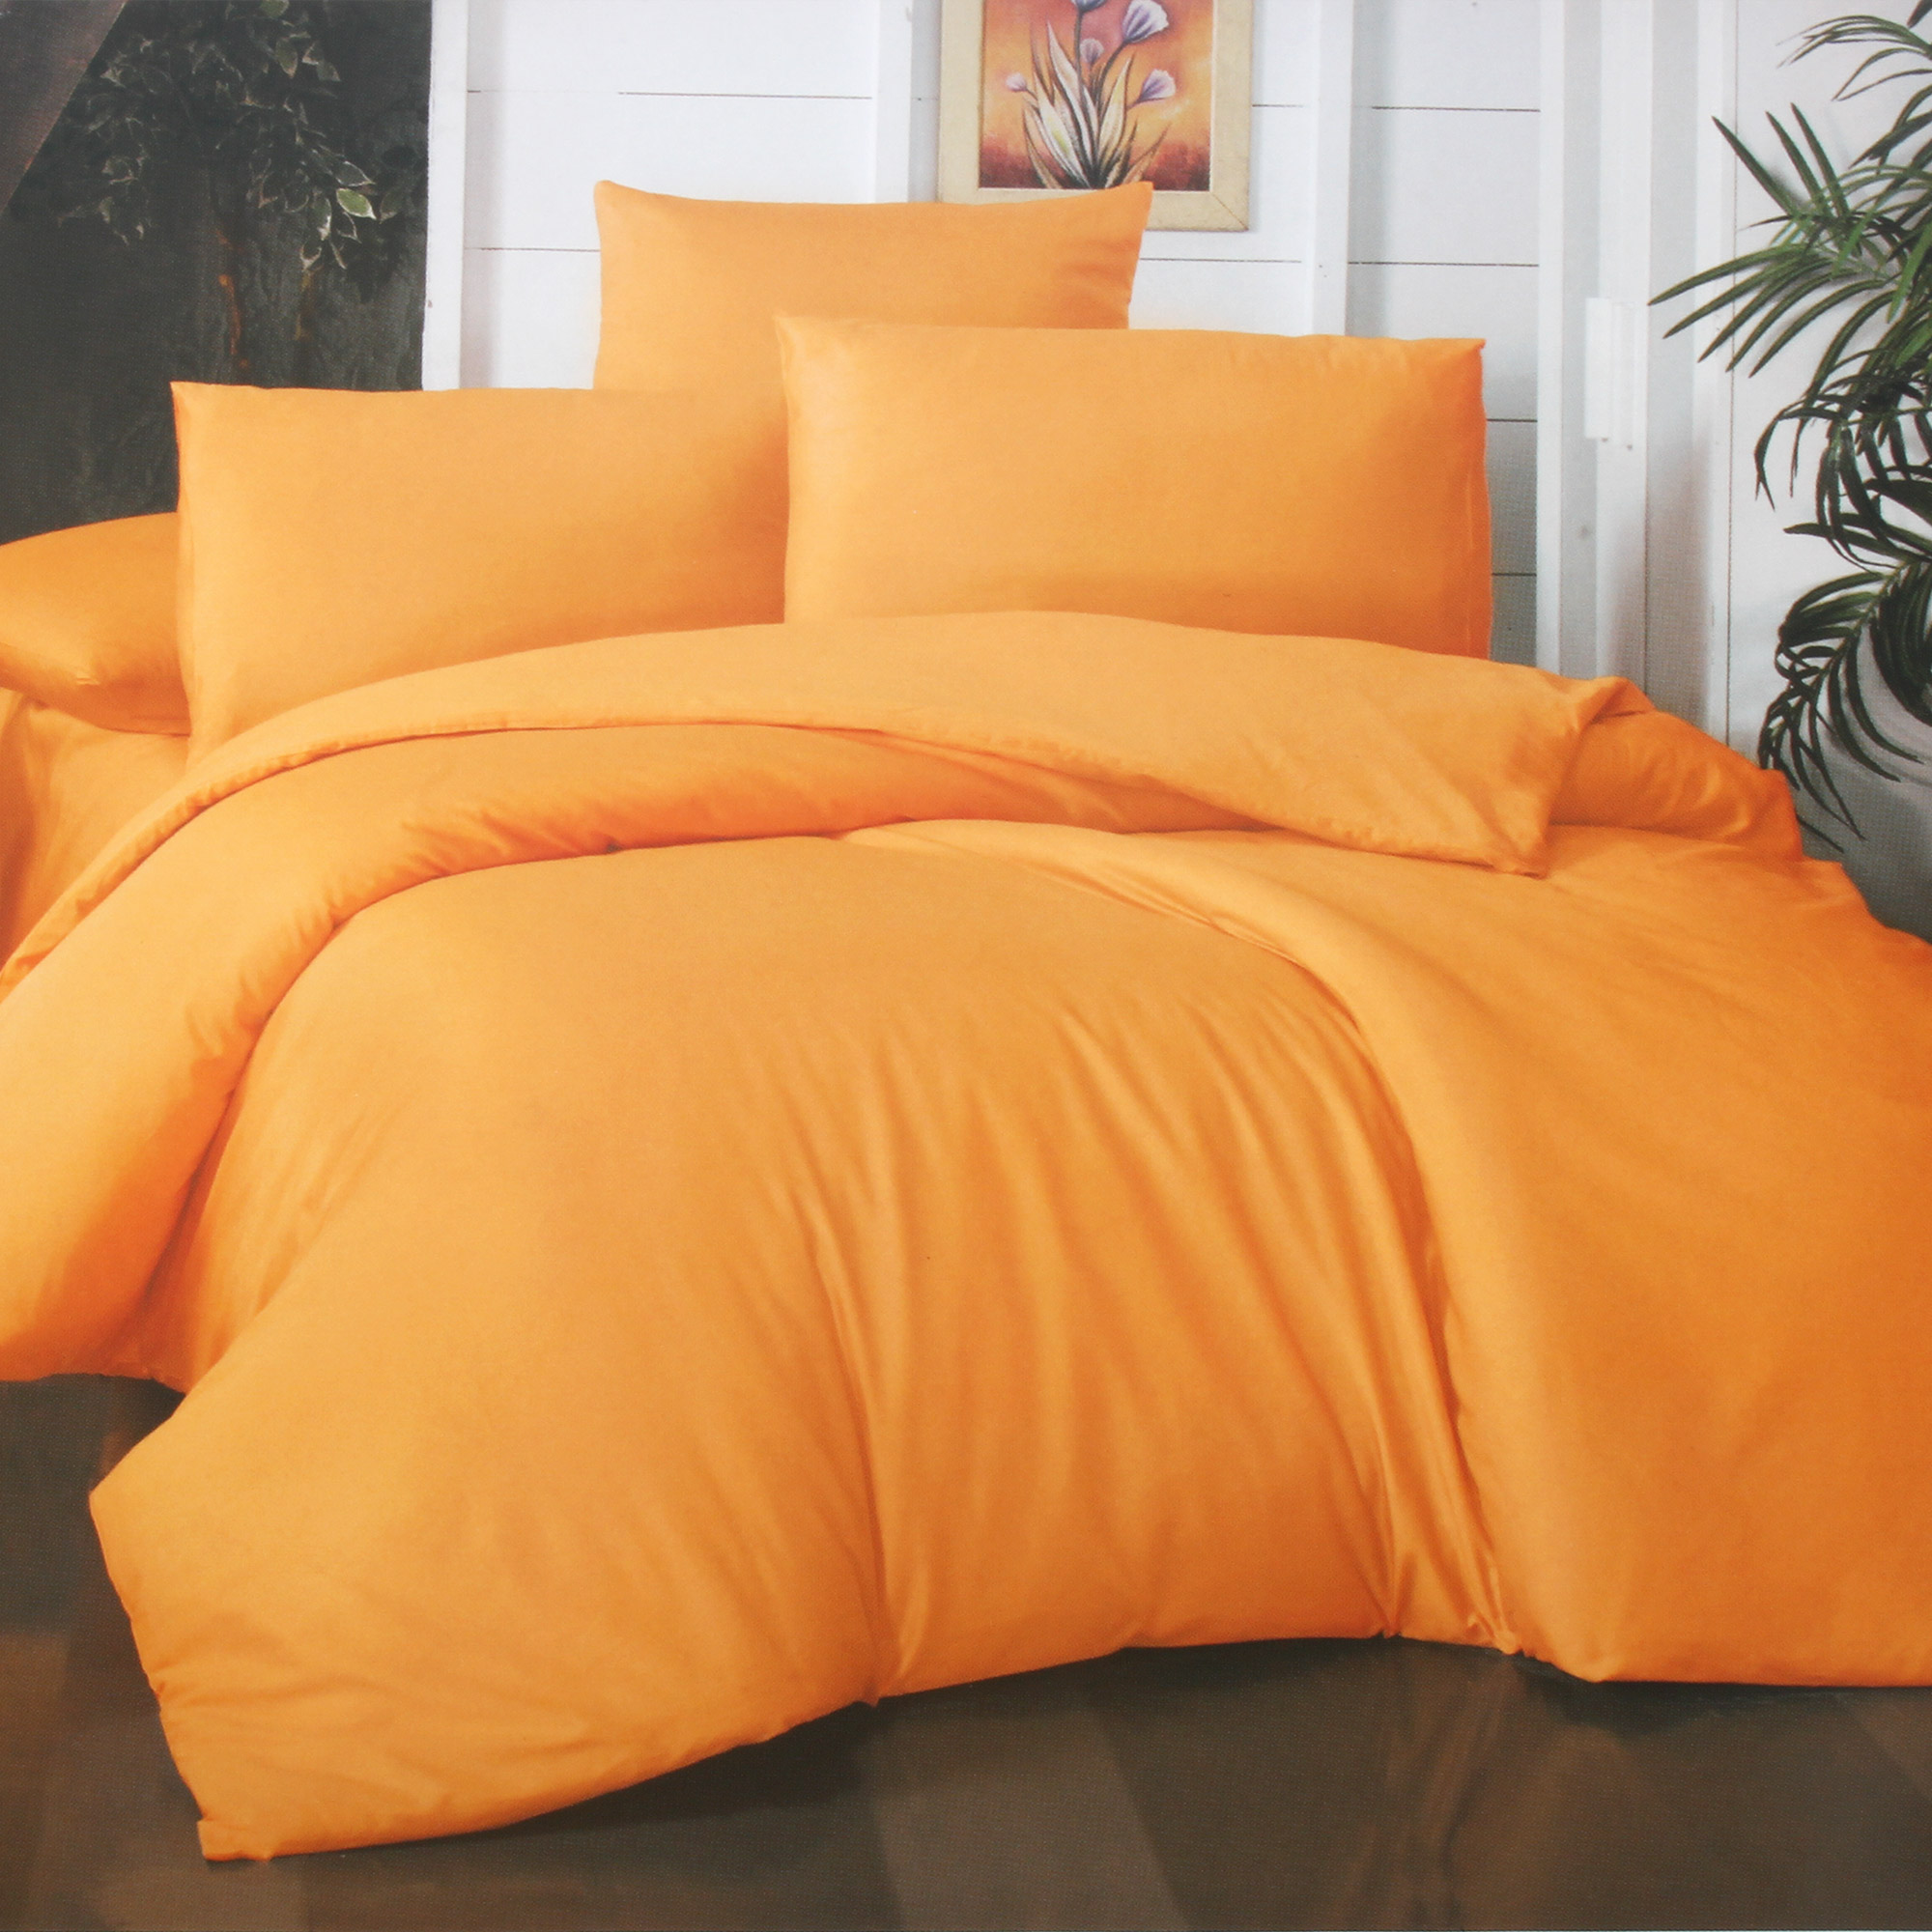 Комплект постельного белья La Besse Ранфорс горчичный Полуторный, размер Полуторный - фото 1